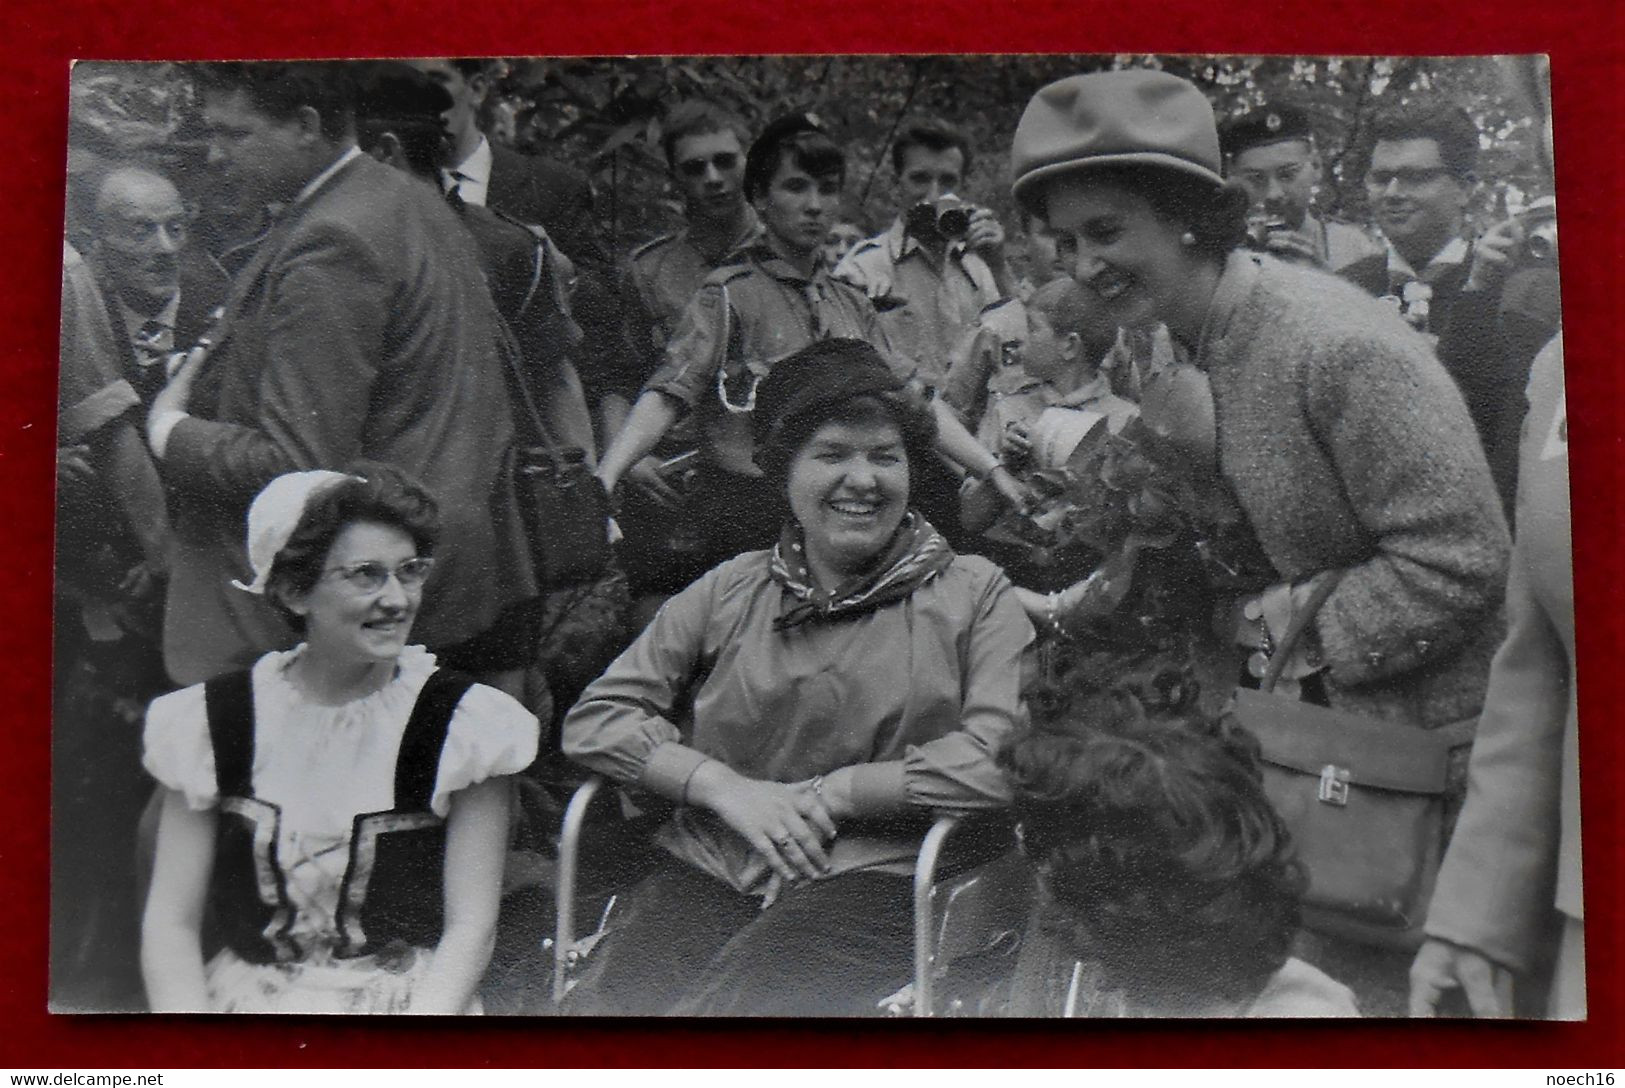 Photo Originale, Format CP - Reine Fabiola, Journée Du Scoutisme - Bruxelles, Mai 1964 - Personnes Identifiées